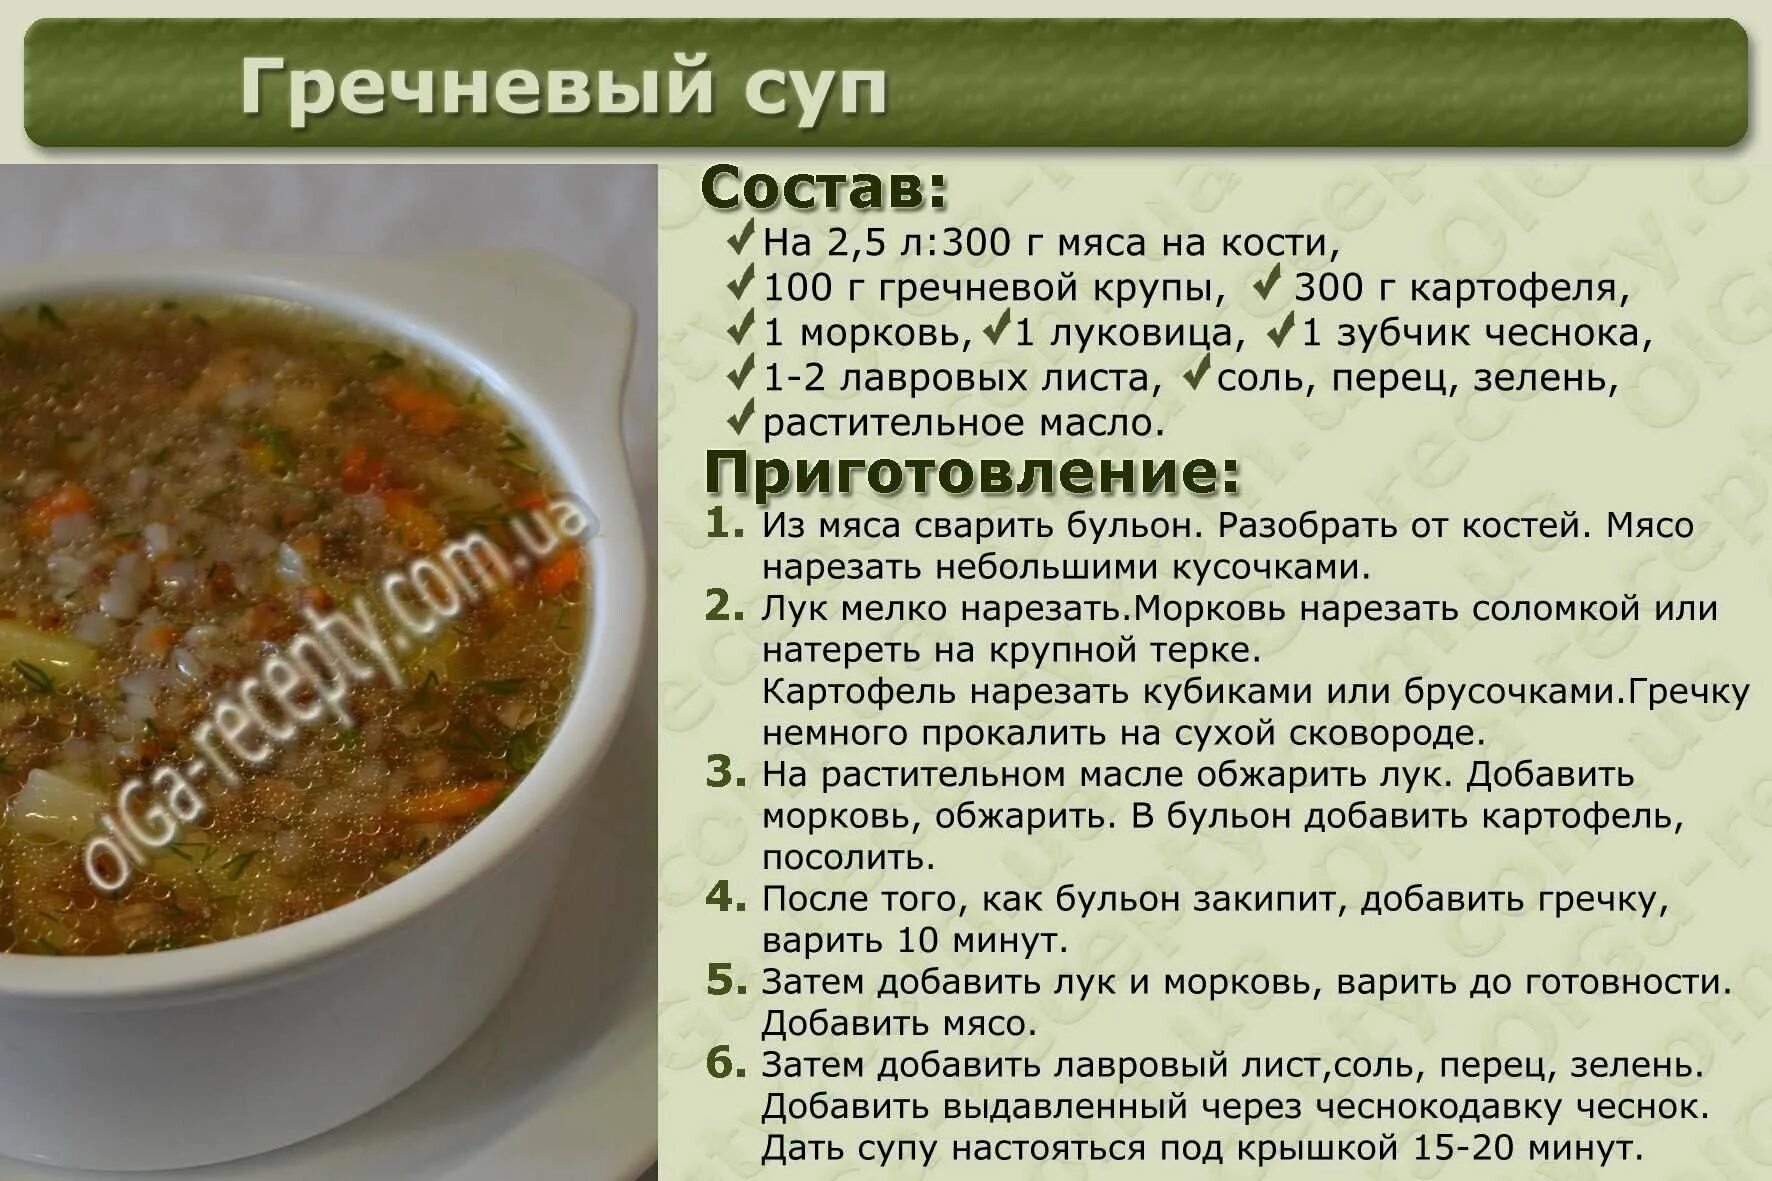 Рецепт колет. Рецепт приготовления супа. Рецептура приготовления супа. Рецепты первых блюд с описанием. Рецепты супов в картинках.